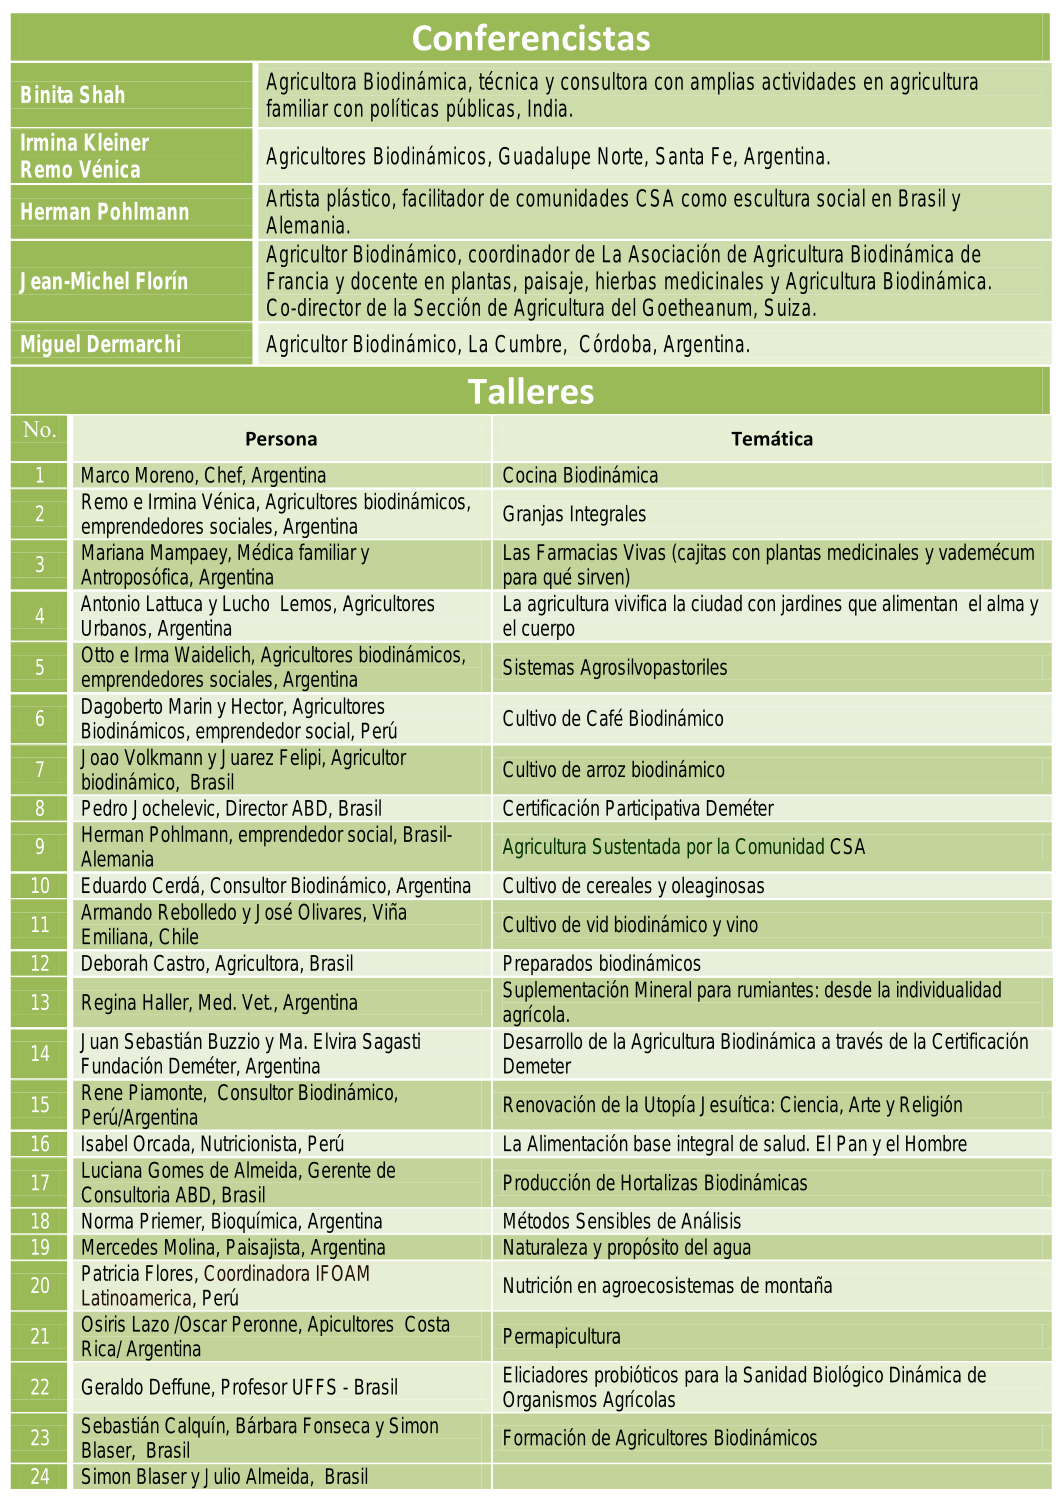 Conferencistas 30 Encuentro Latinoamericano de Agricultura Biodinamica - Iguazu-Arg